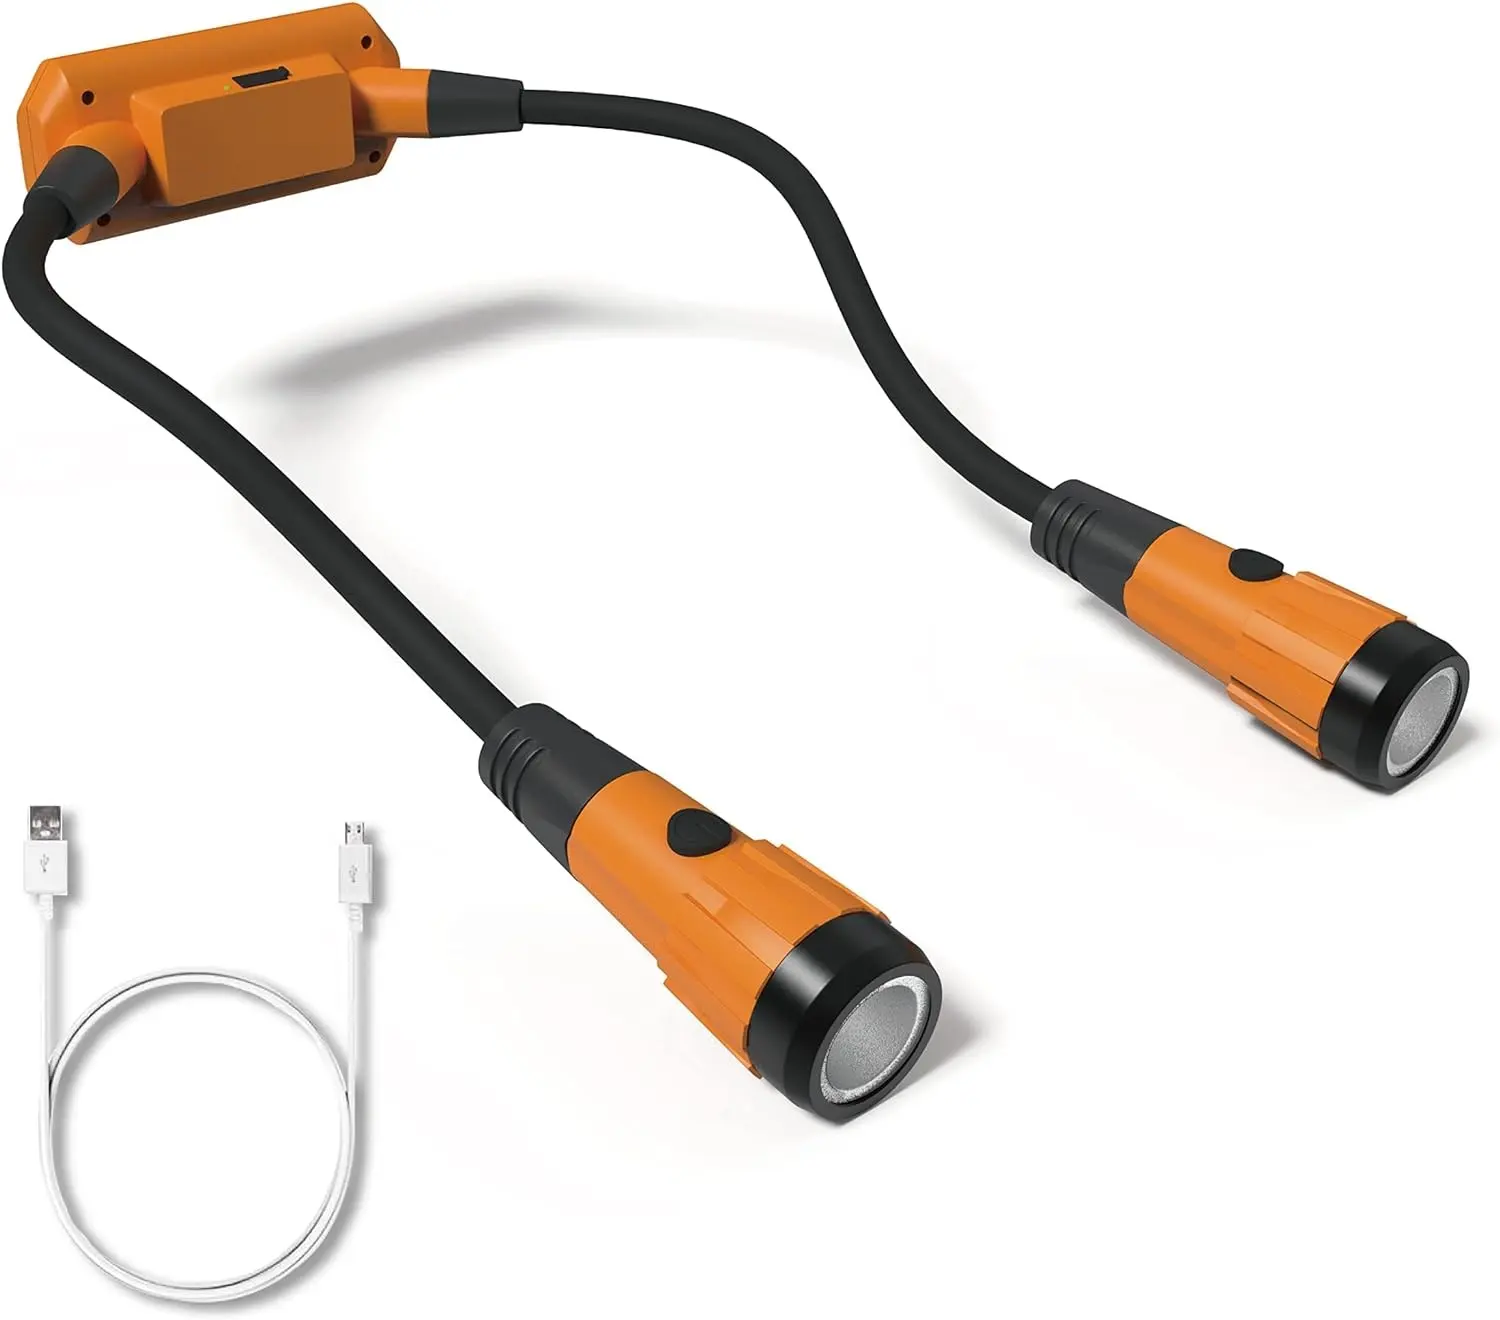 مصباح عمل إصلاح رقيق 320 لومينز قابل لإعادة الشحن بمغناطيس LED مع وصلة USB مصباح مرن يصلح للاستخدام أثناء القيام بأعمال الصيانة يصلح للاستخدام خلال فترة التجول 360 درجة